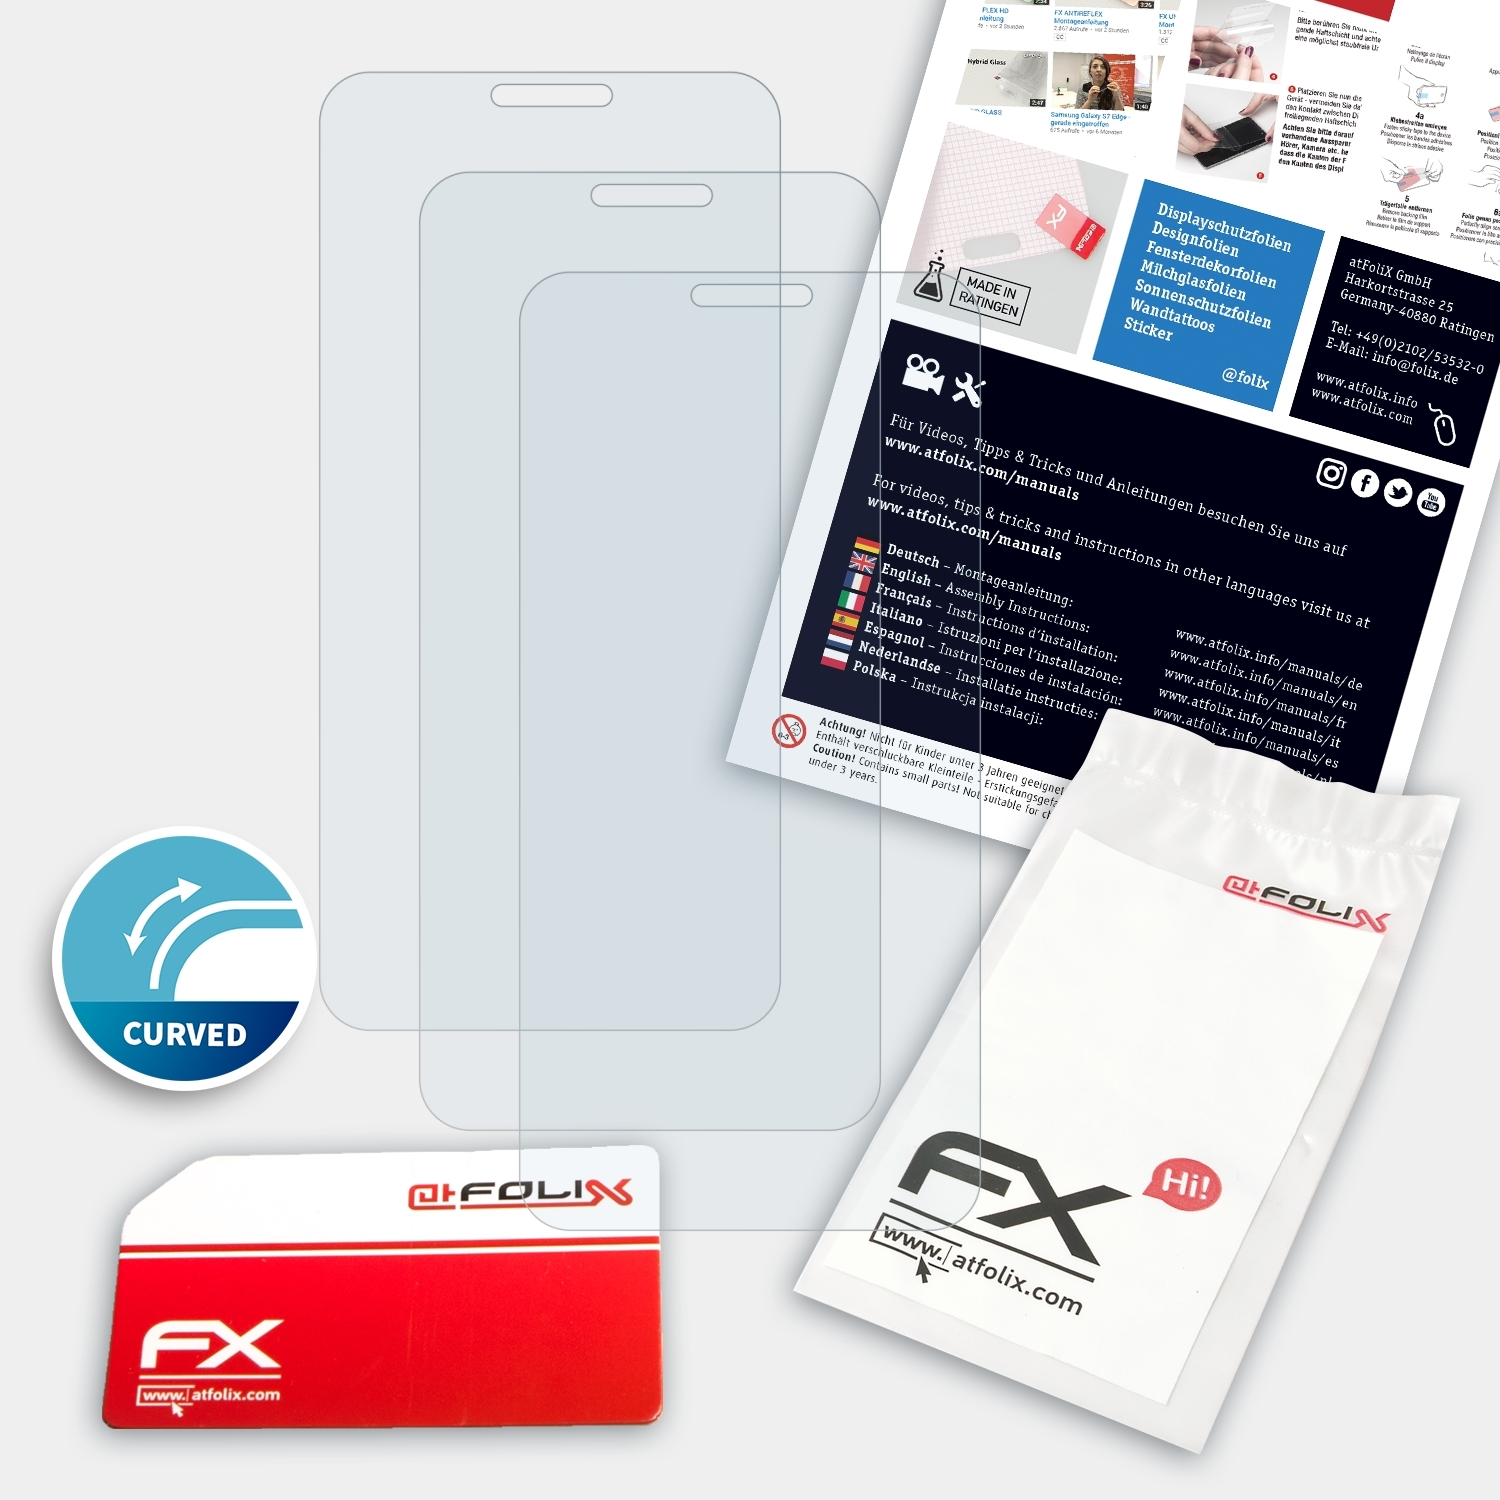 ATFOLIX 3x FX-ActiFleX Displayschutz(für Vivo Y81s)